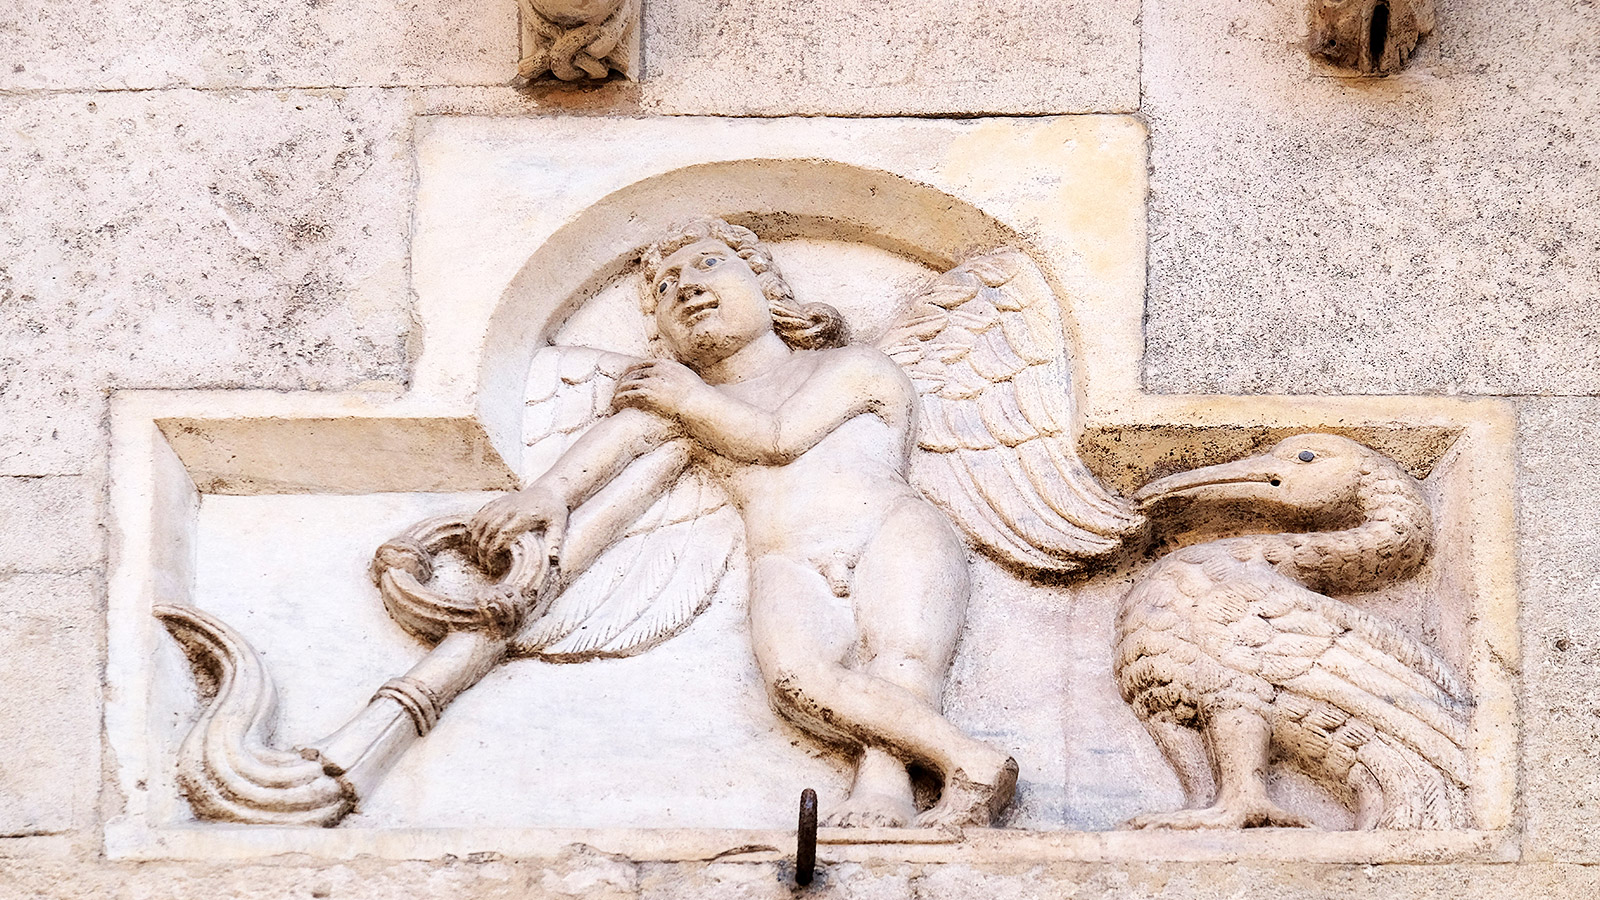 De reliëfs van Wiligelmo op de gevel van de Duomo in Modena zijn een mooi voorbeeld van vroeg romaanse kunst